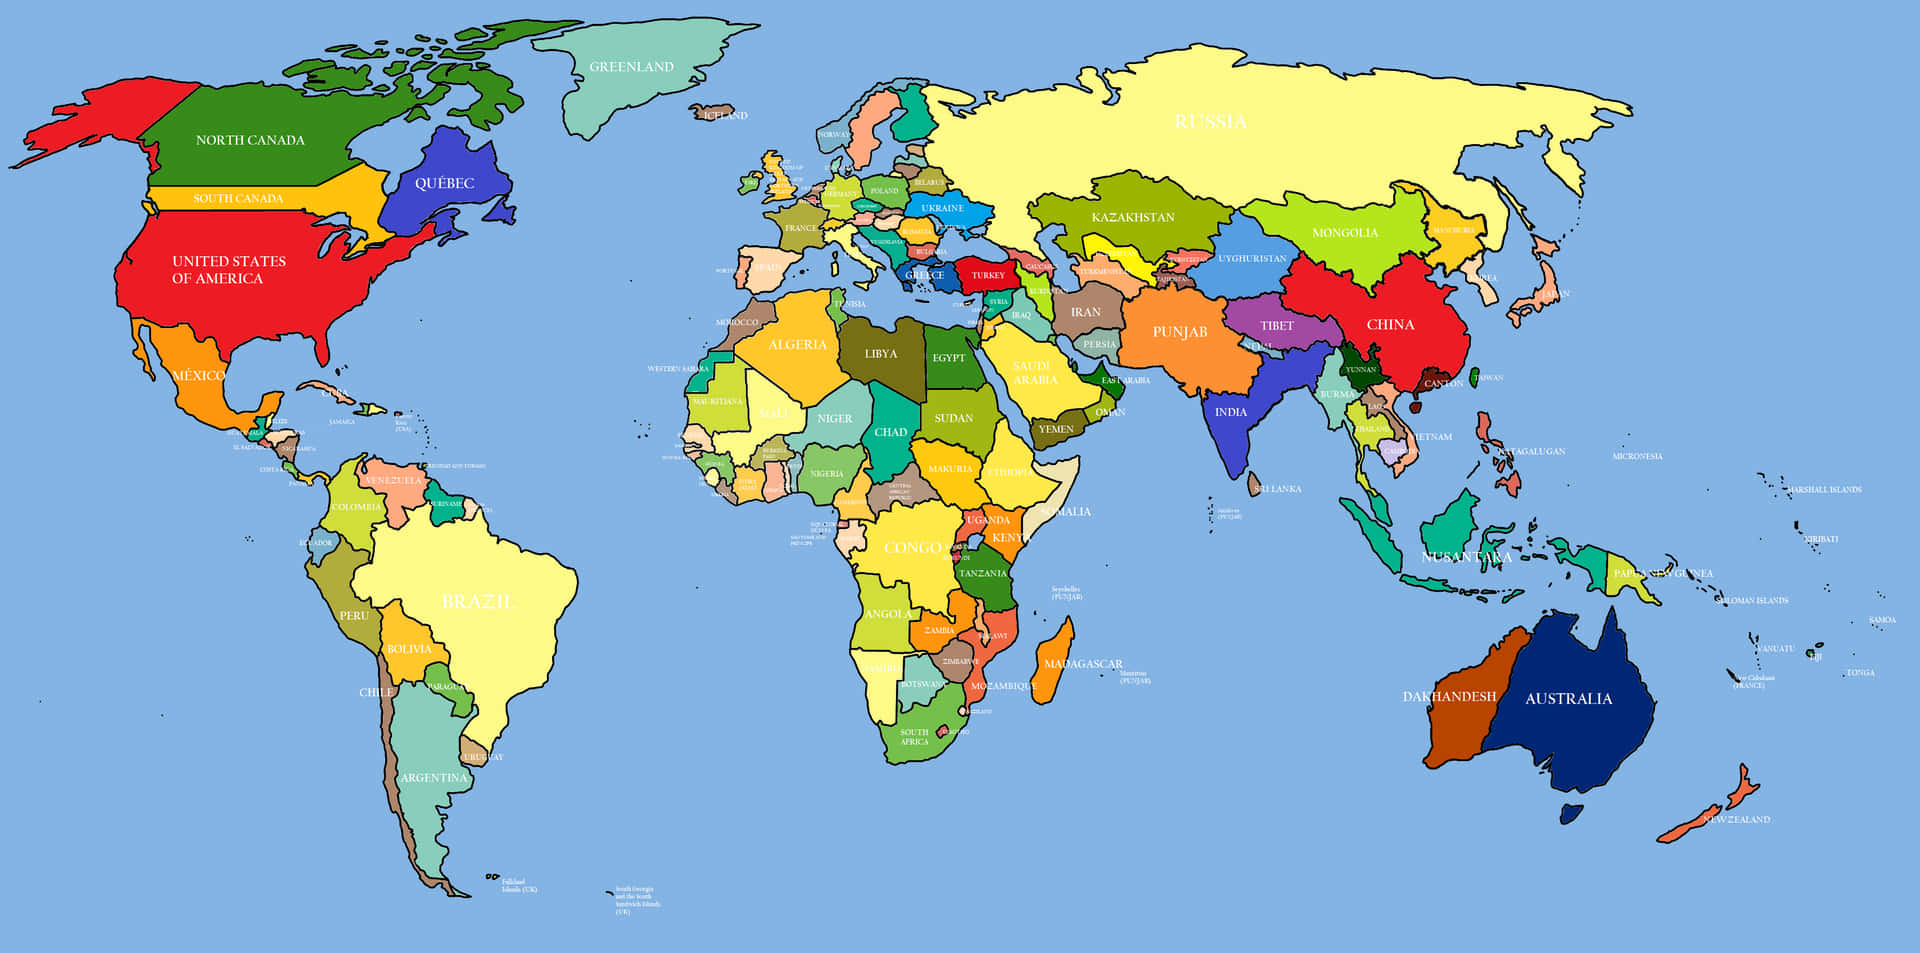 Endetaljerad Karta Över Världen.